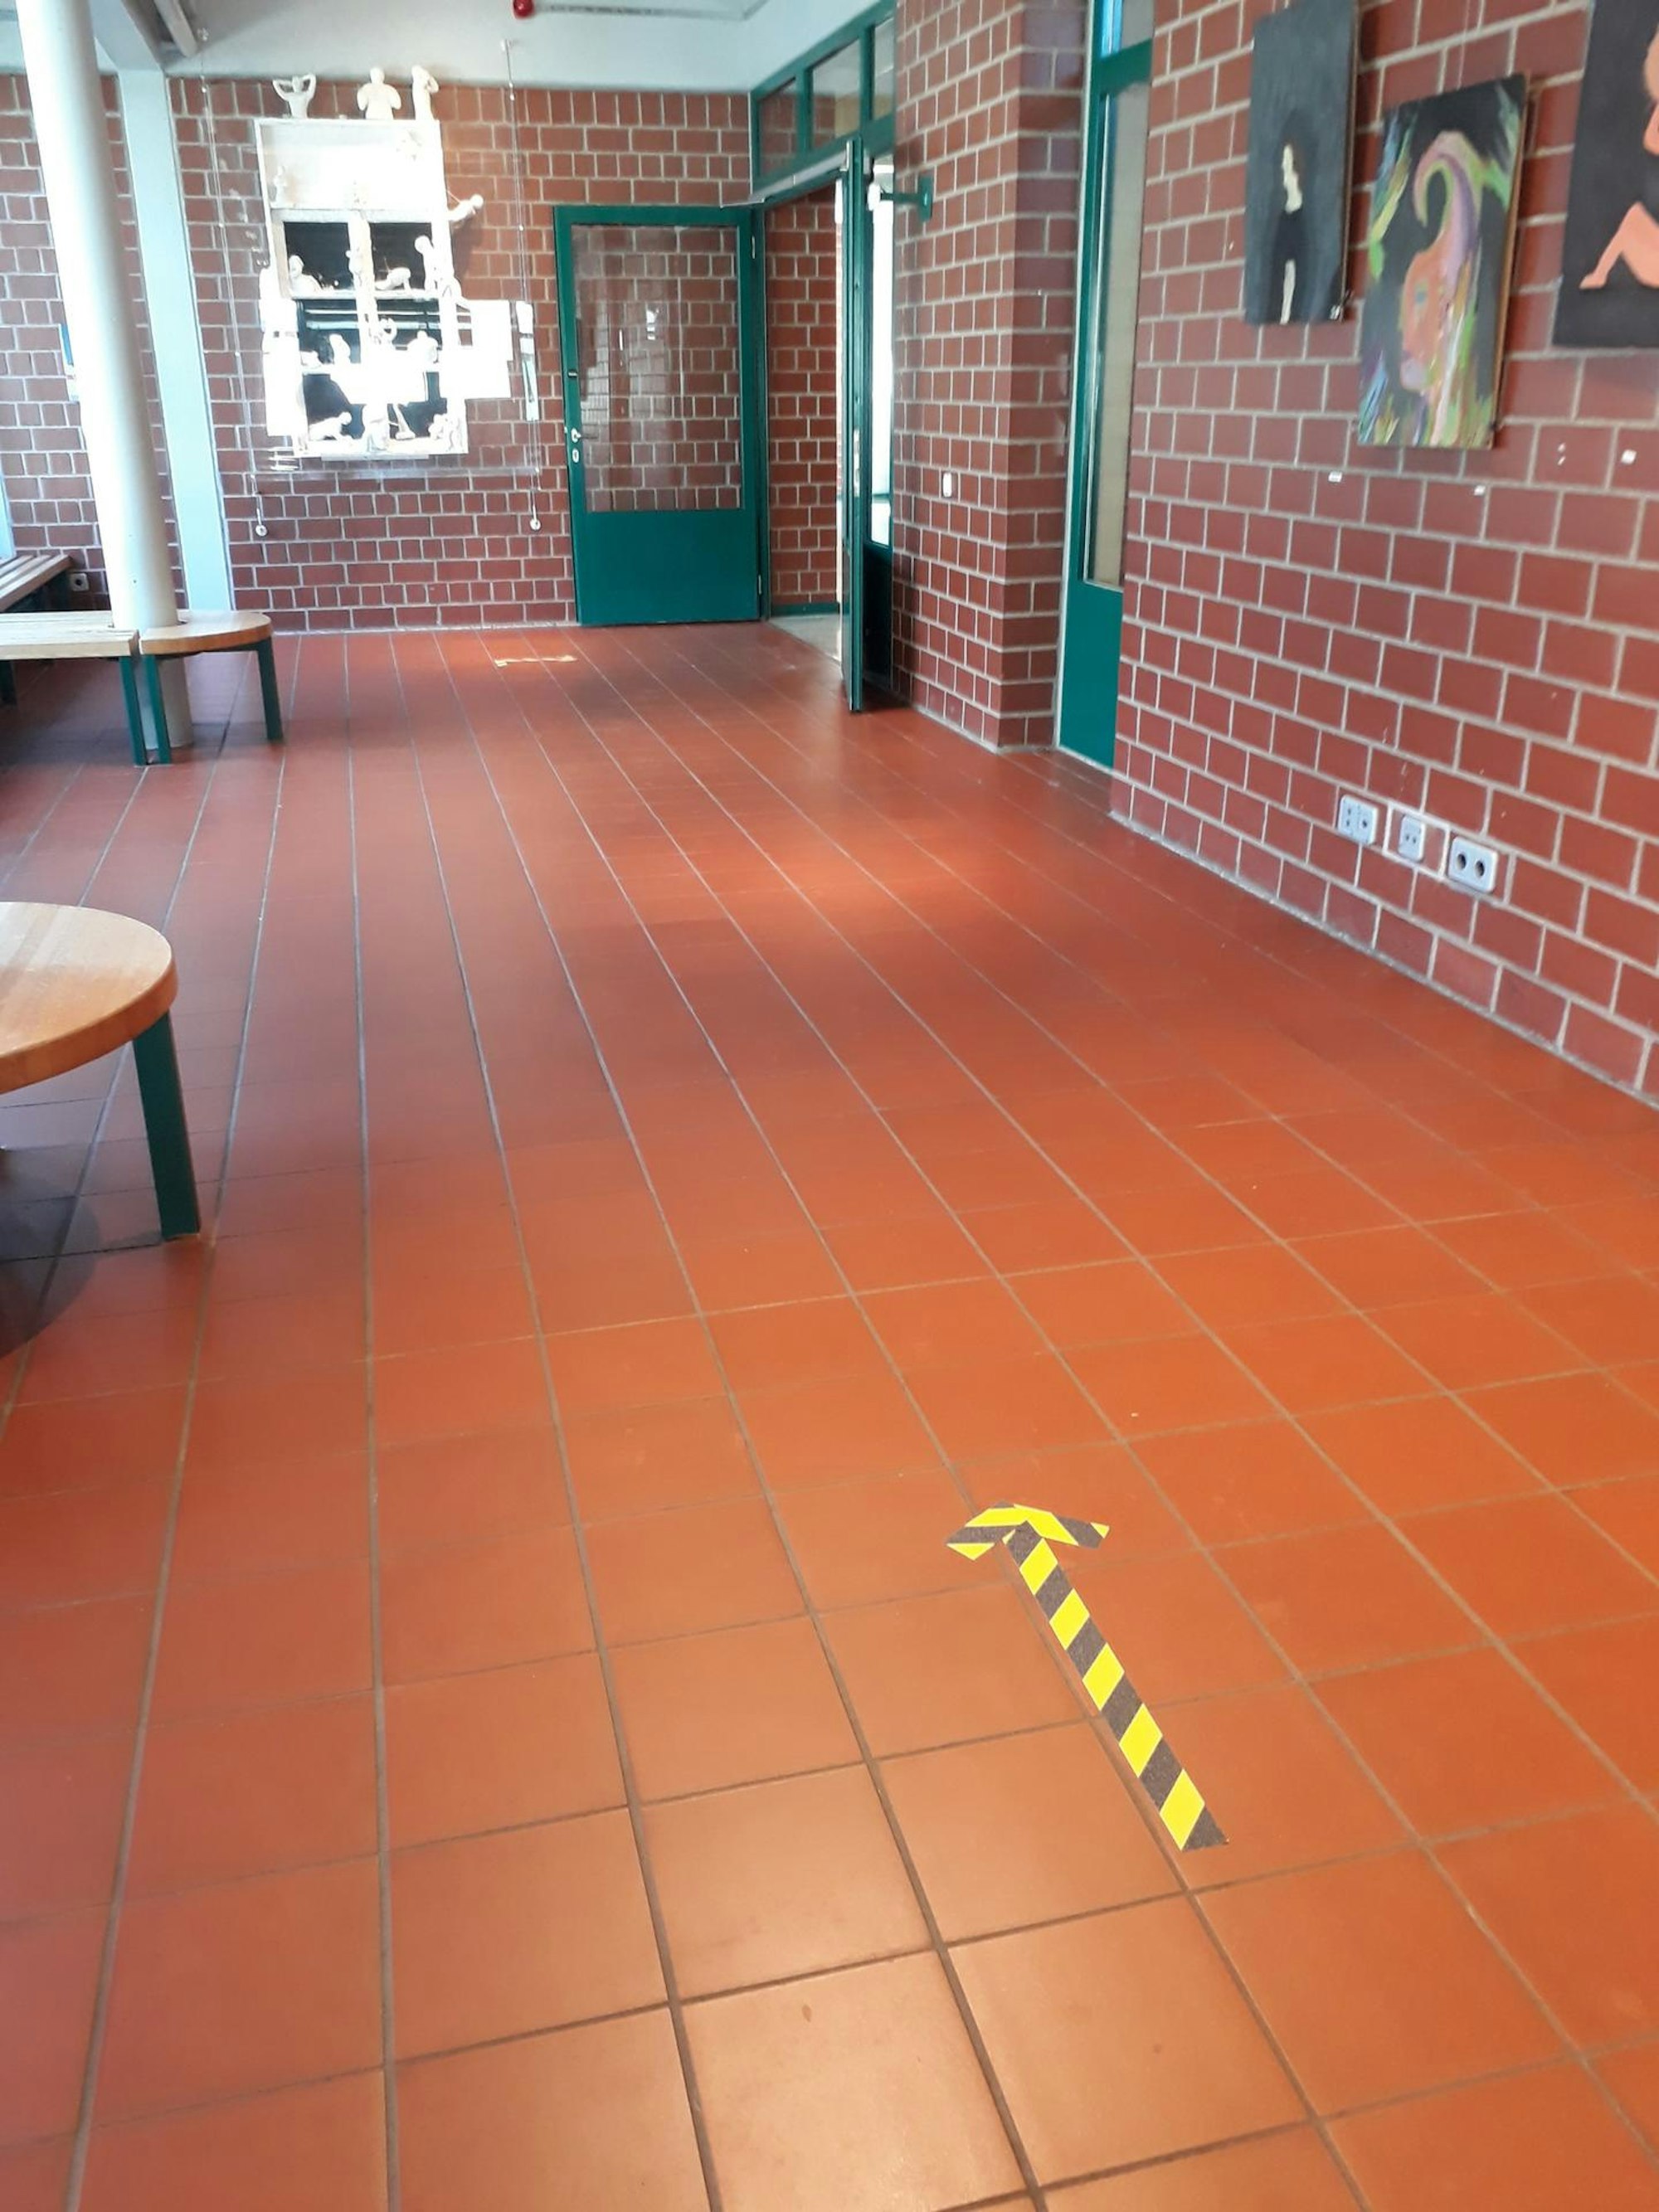 Aufgeklebte Pfeile auf dem Fußboden sollen sicherstellen, dass die Abstandsregeln eingehalten werden.